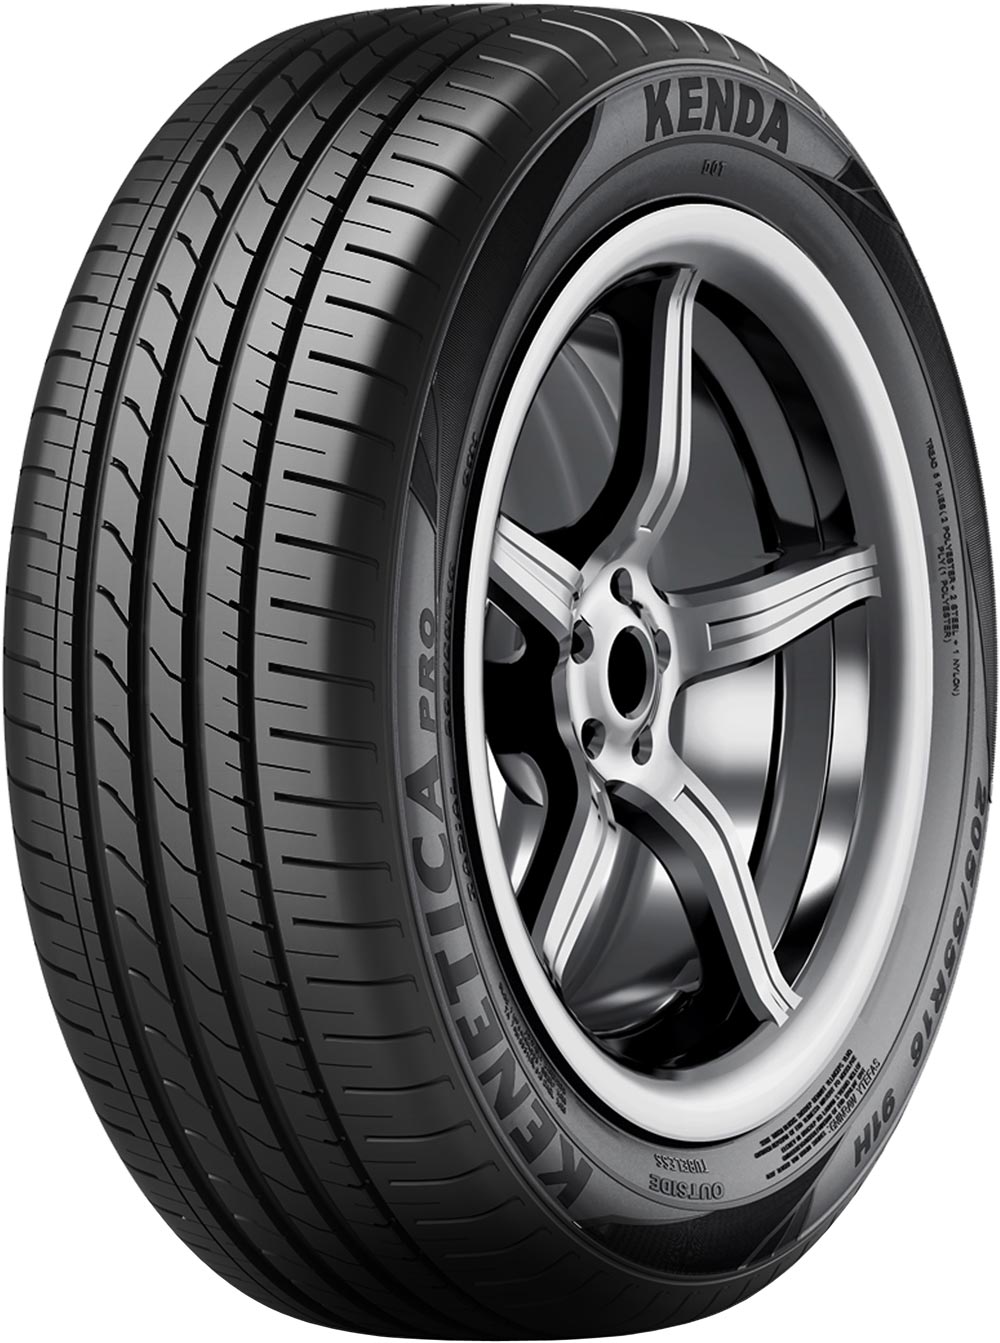 Автомобилни гуми KENDA Kenetica Pro 210 155/70 R13 75T